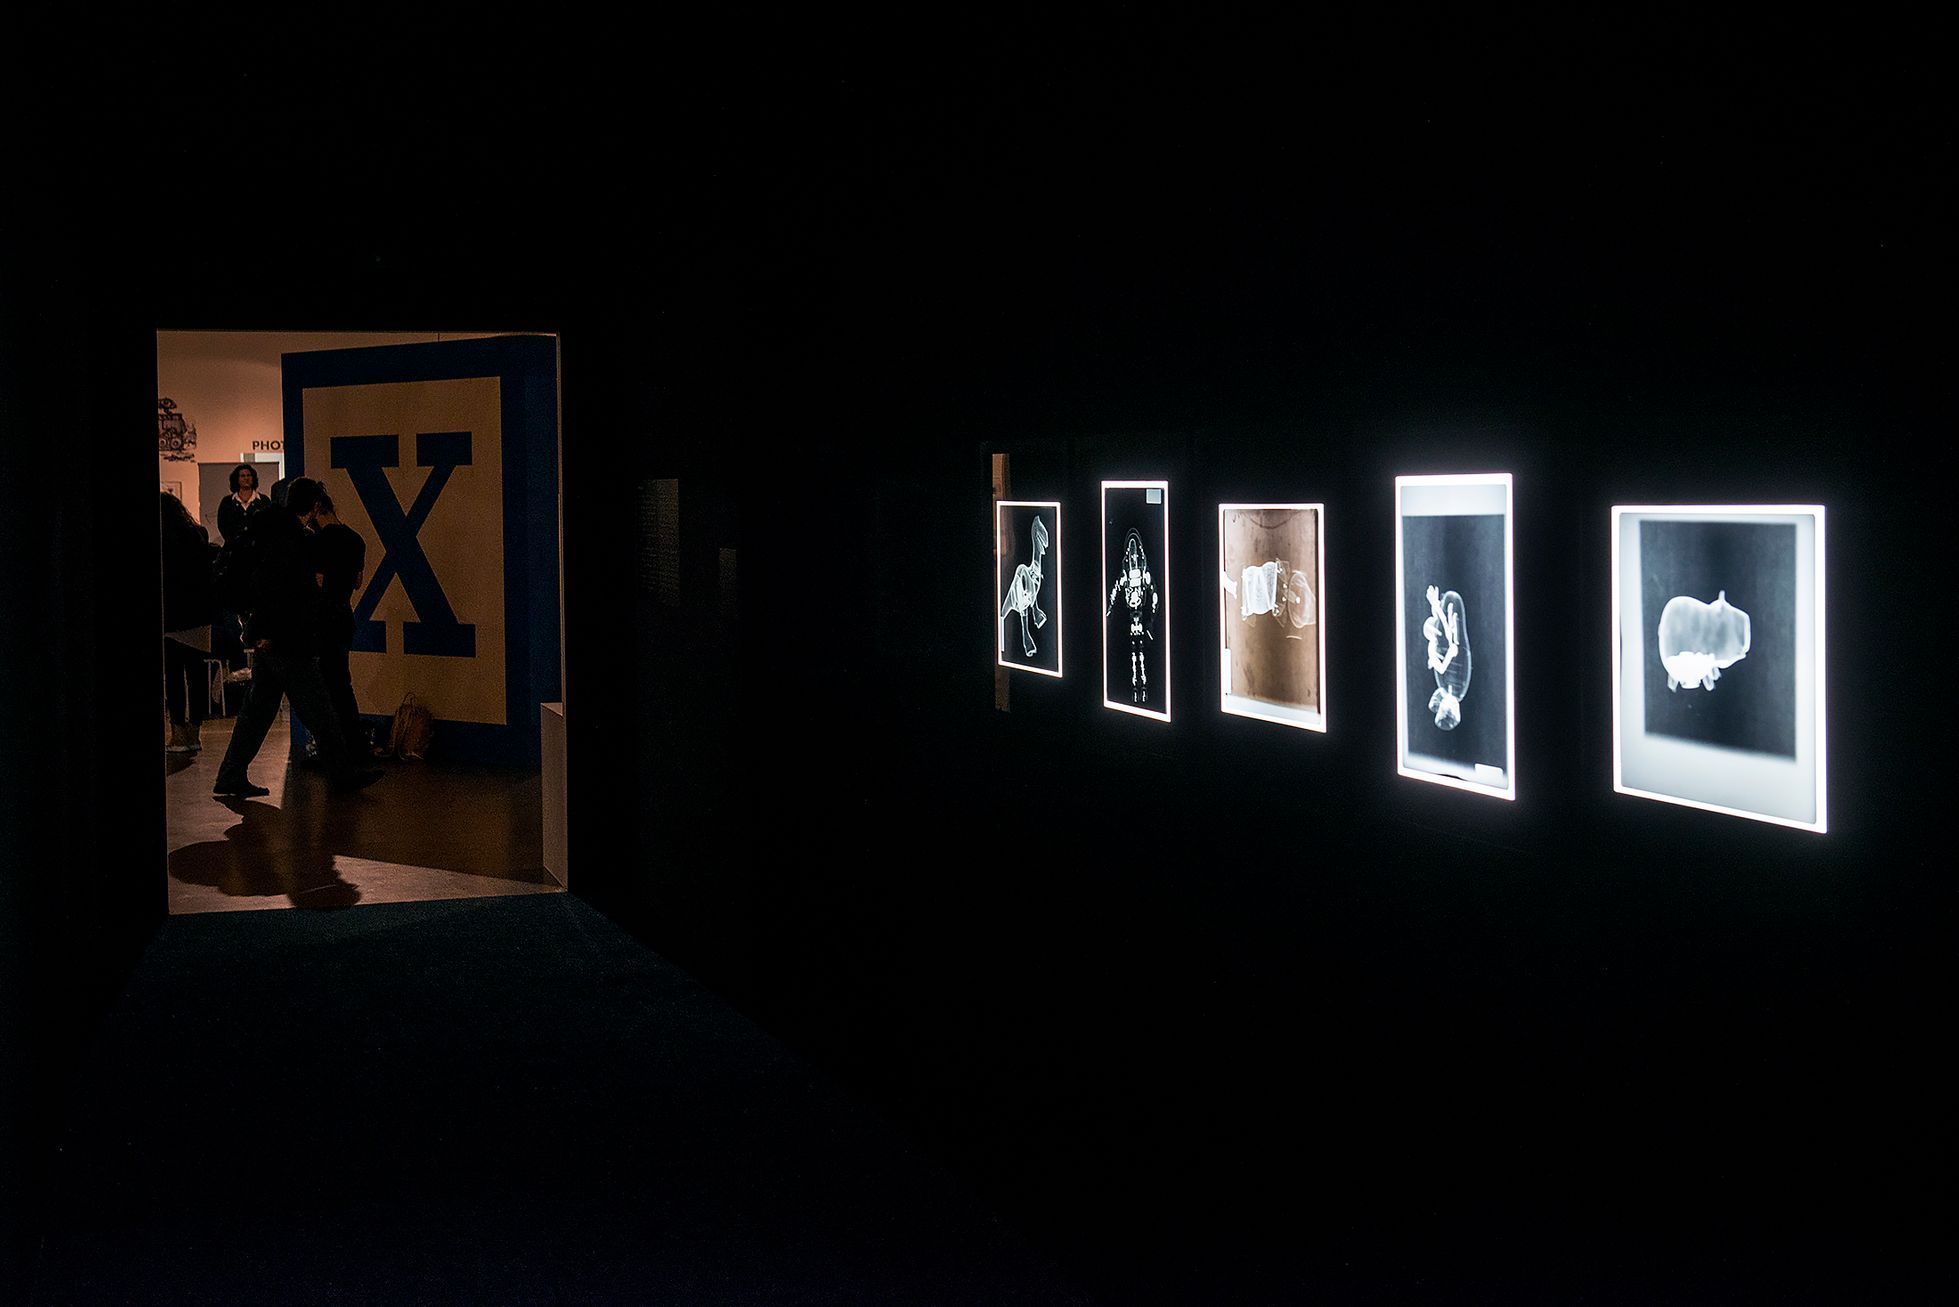 Výstava animačního studia Pixar, Výstaviště Praha, 14. 2. 2019